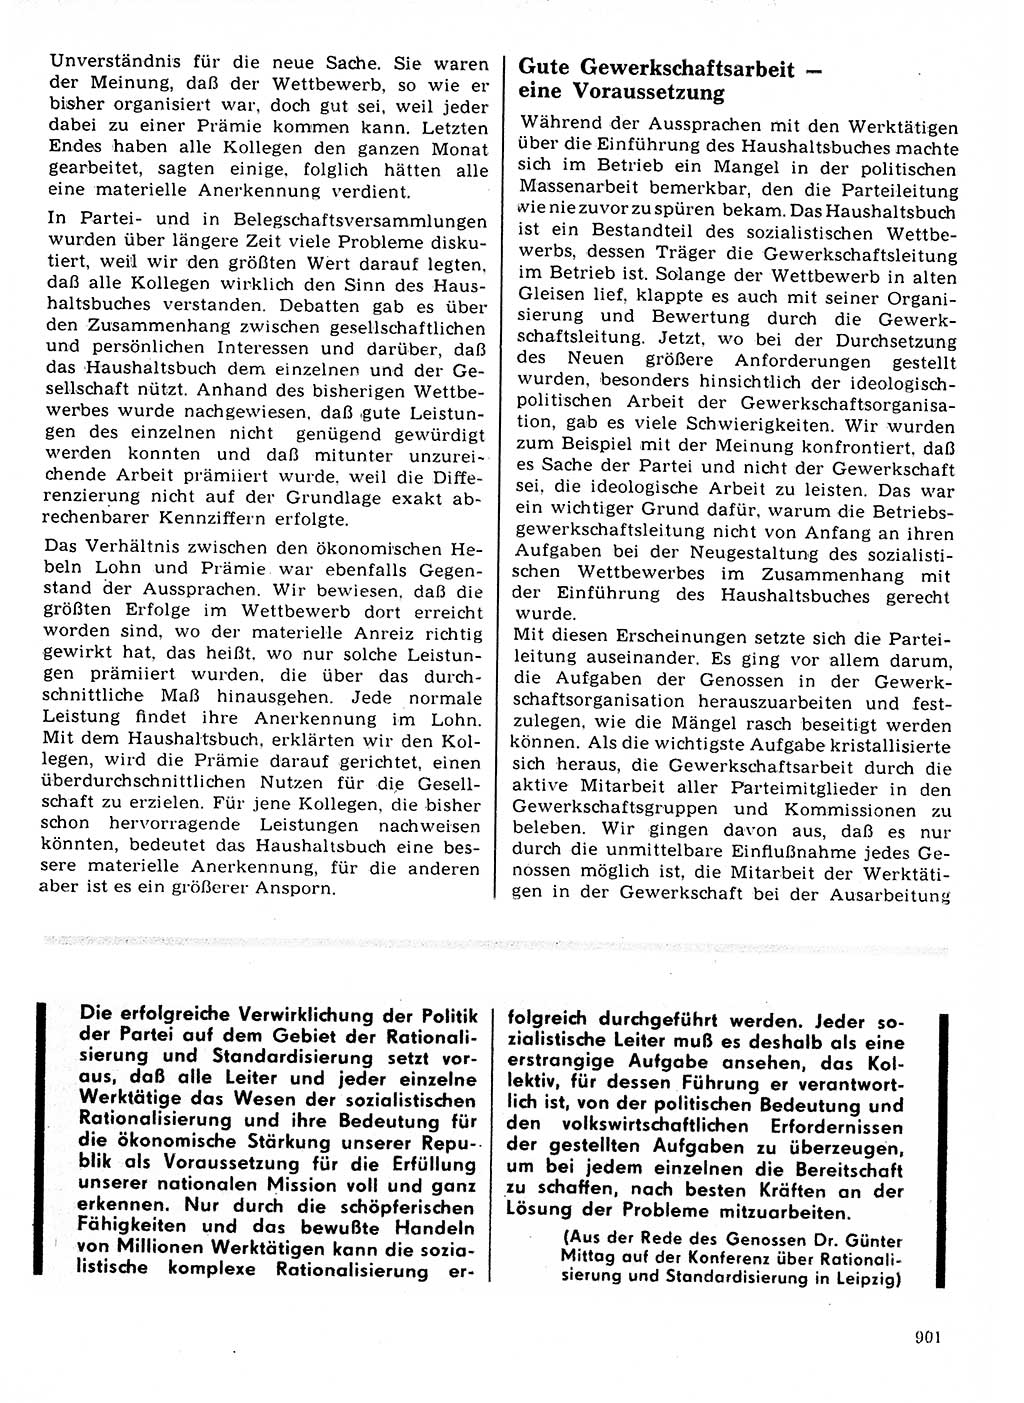 Neuer Weg (NW), Organ des Zentralkomitees (ZK) der SED (Sozialistische Einheitspartei Deutschlands) für Fragen des Parteilebens, 21. Jahrgang [Deutsche Demokratische Republik (DDR)] 1966, Seite 901 (NW ZK SED DDR 1966, S. 901)